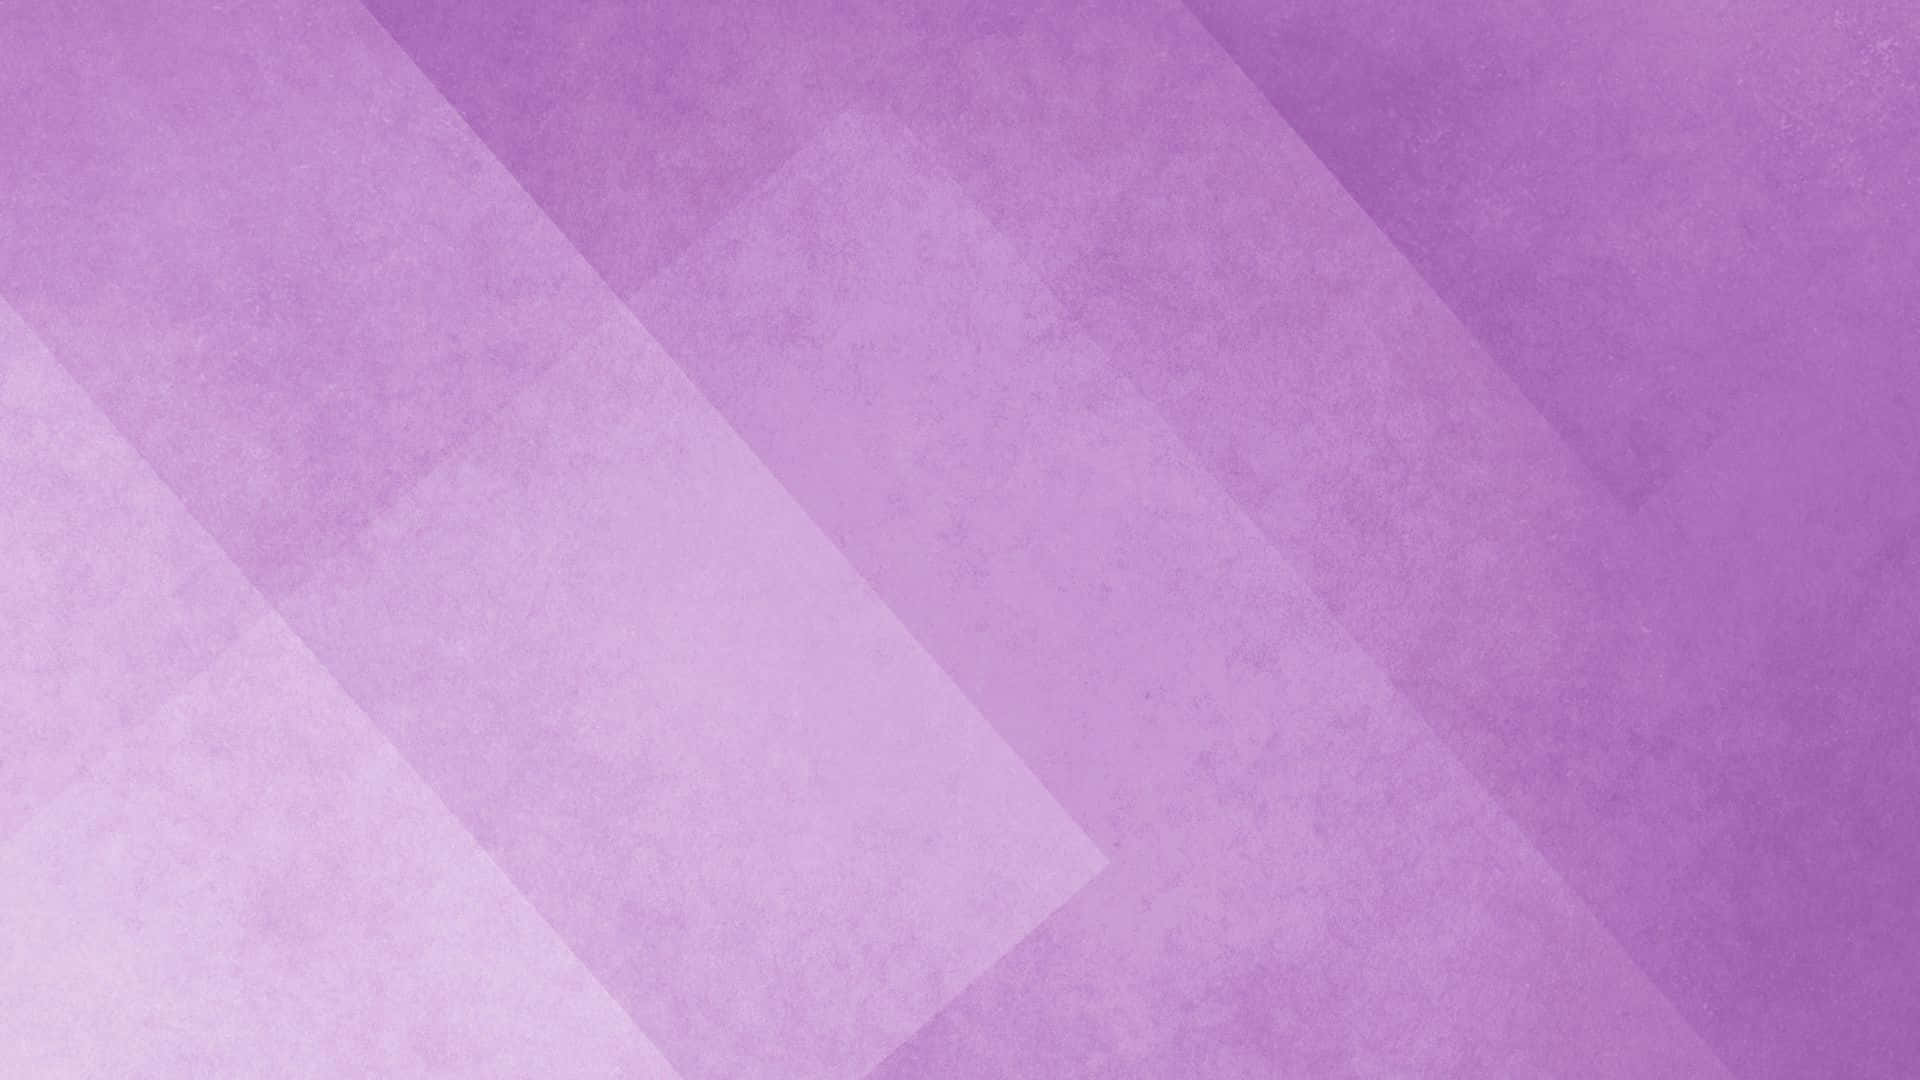 Fondoabstracto Cautivador Con Degradado Púrpura.